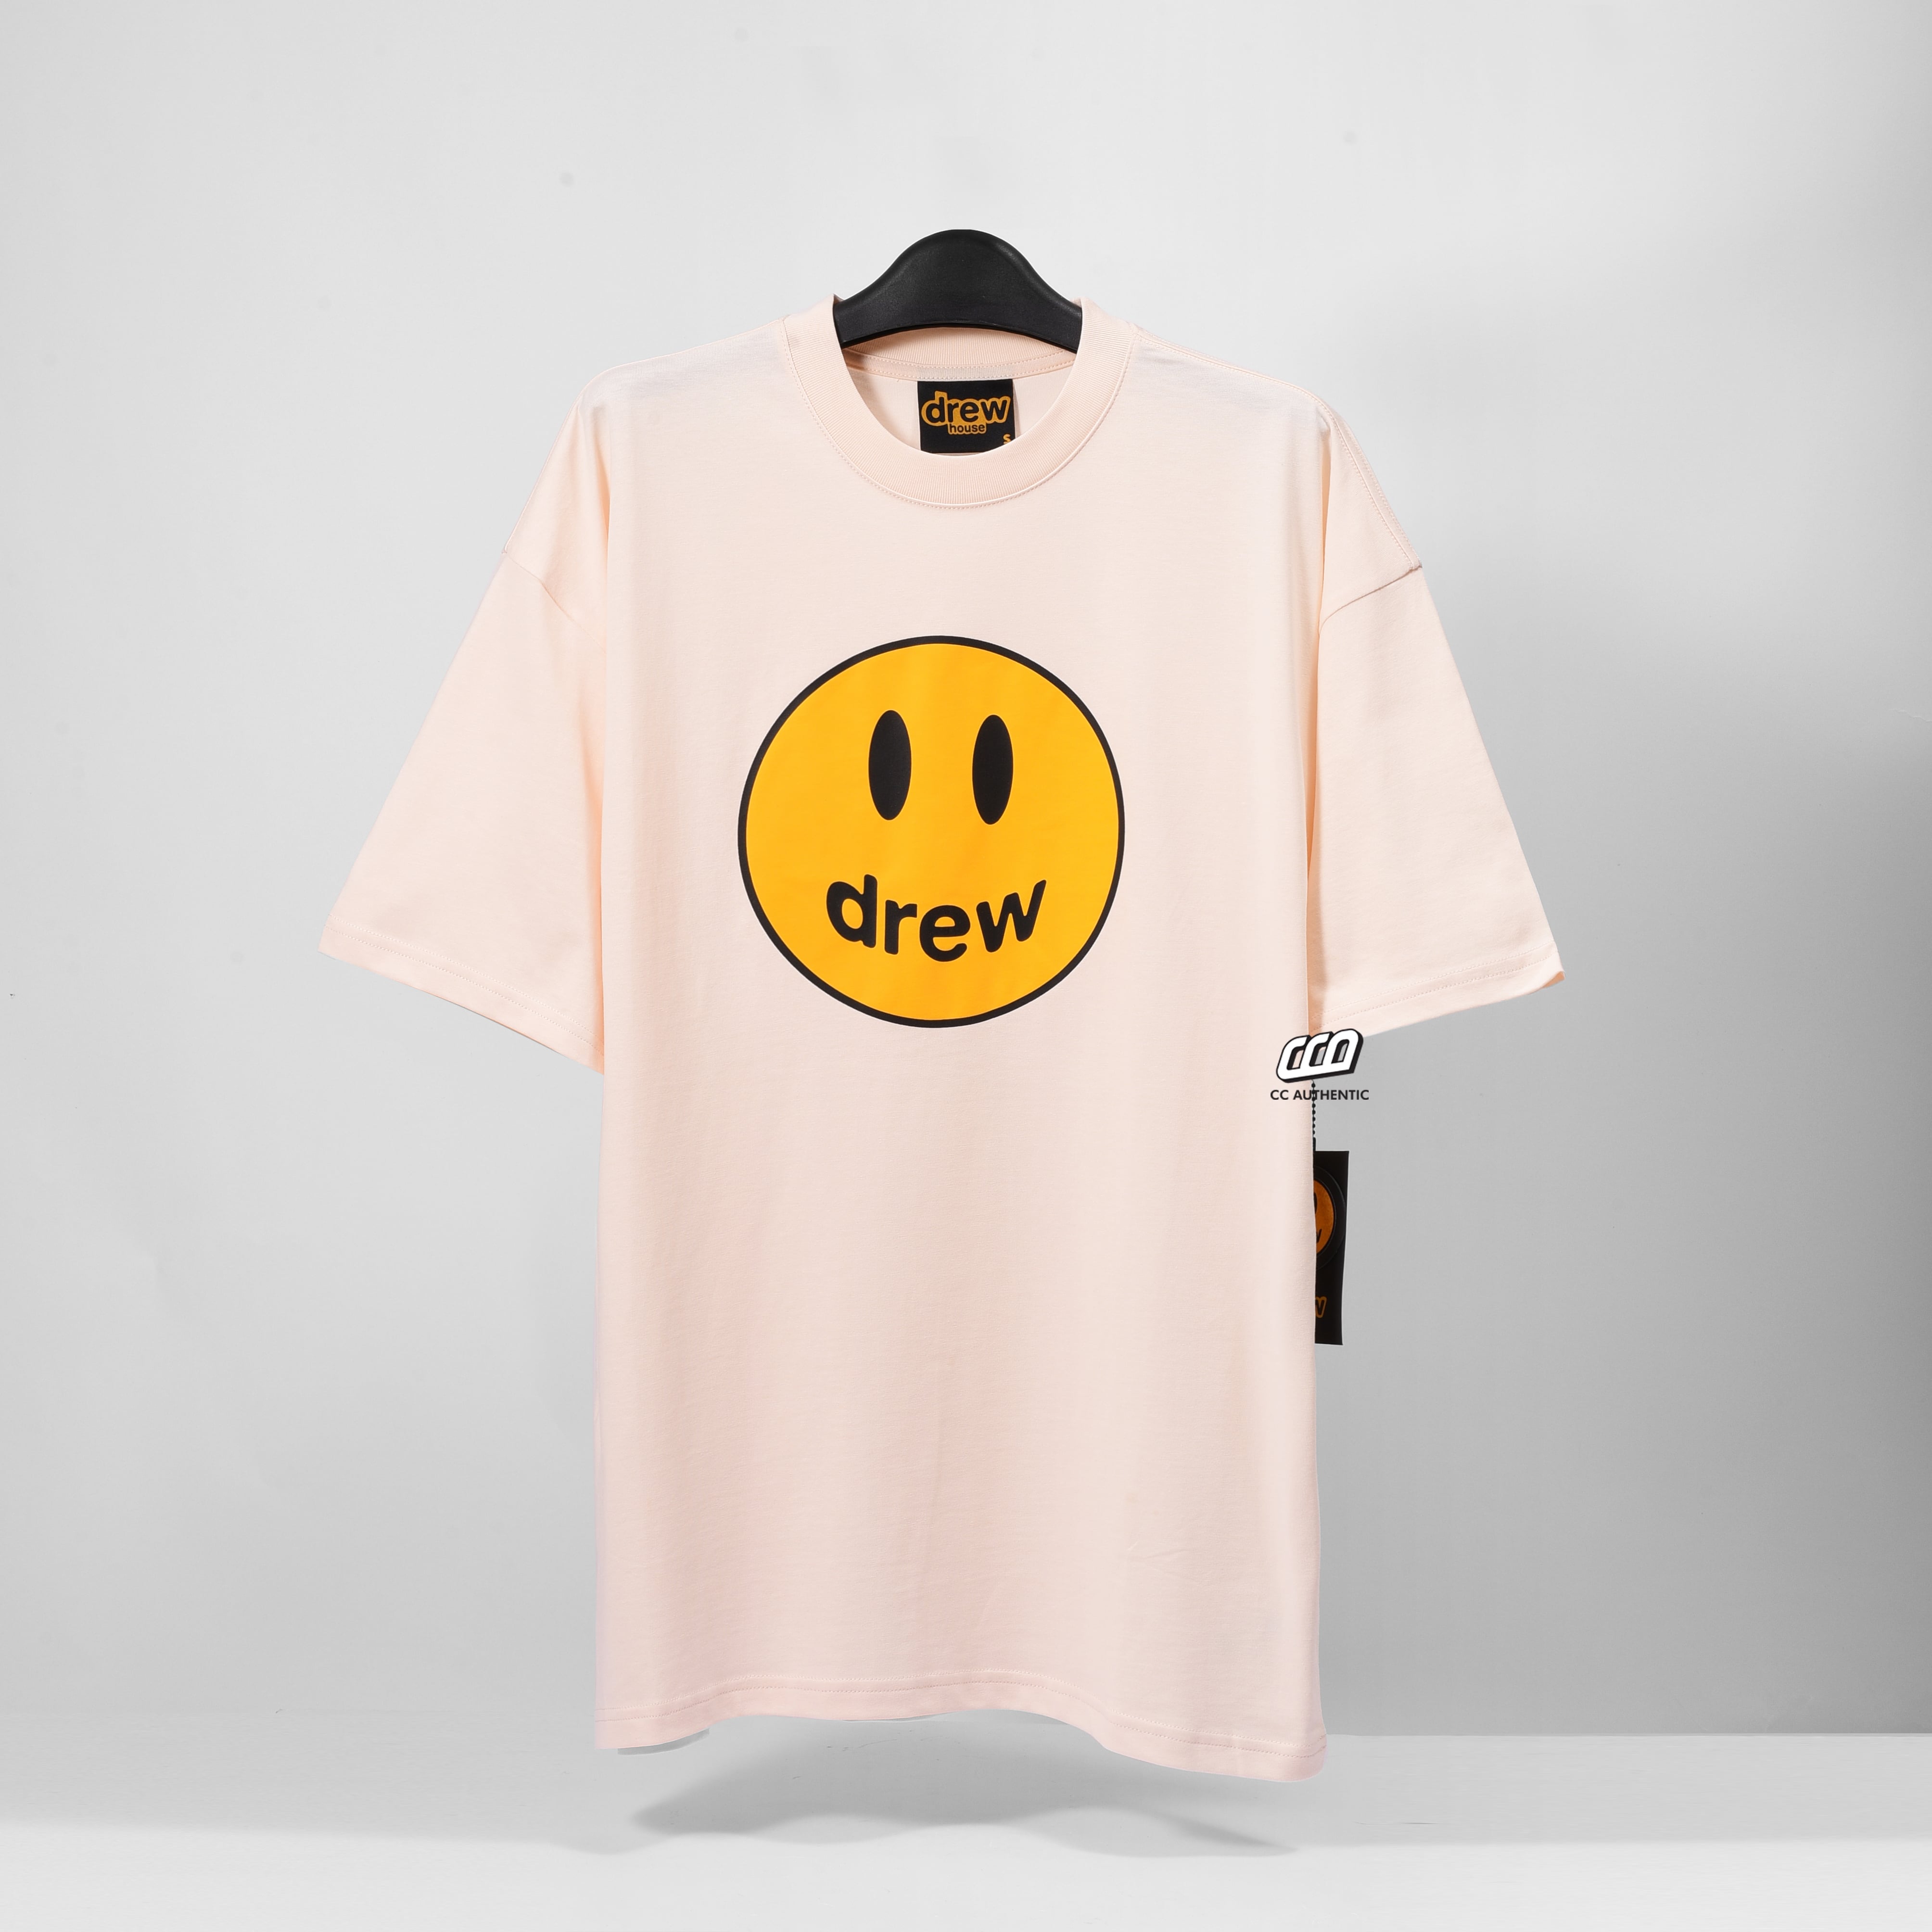 Drew House Mascot SS T-shirt - Cream